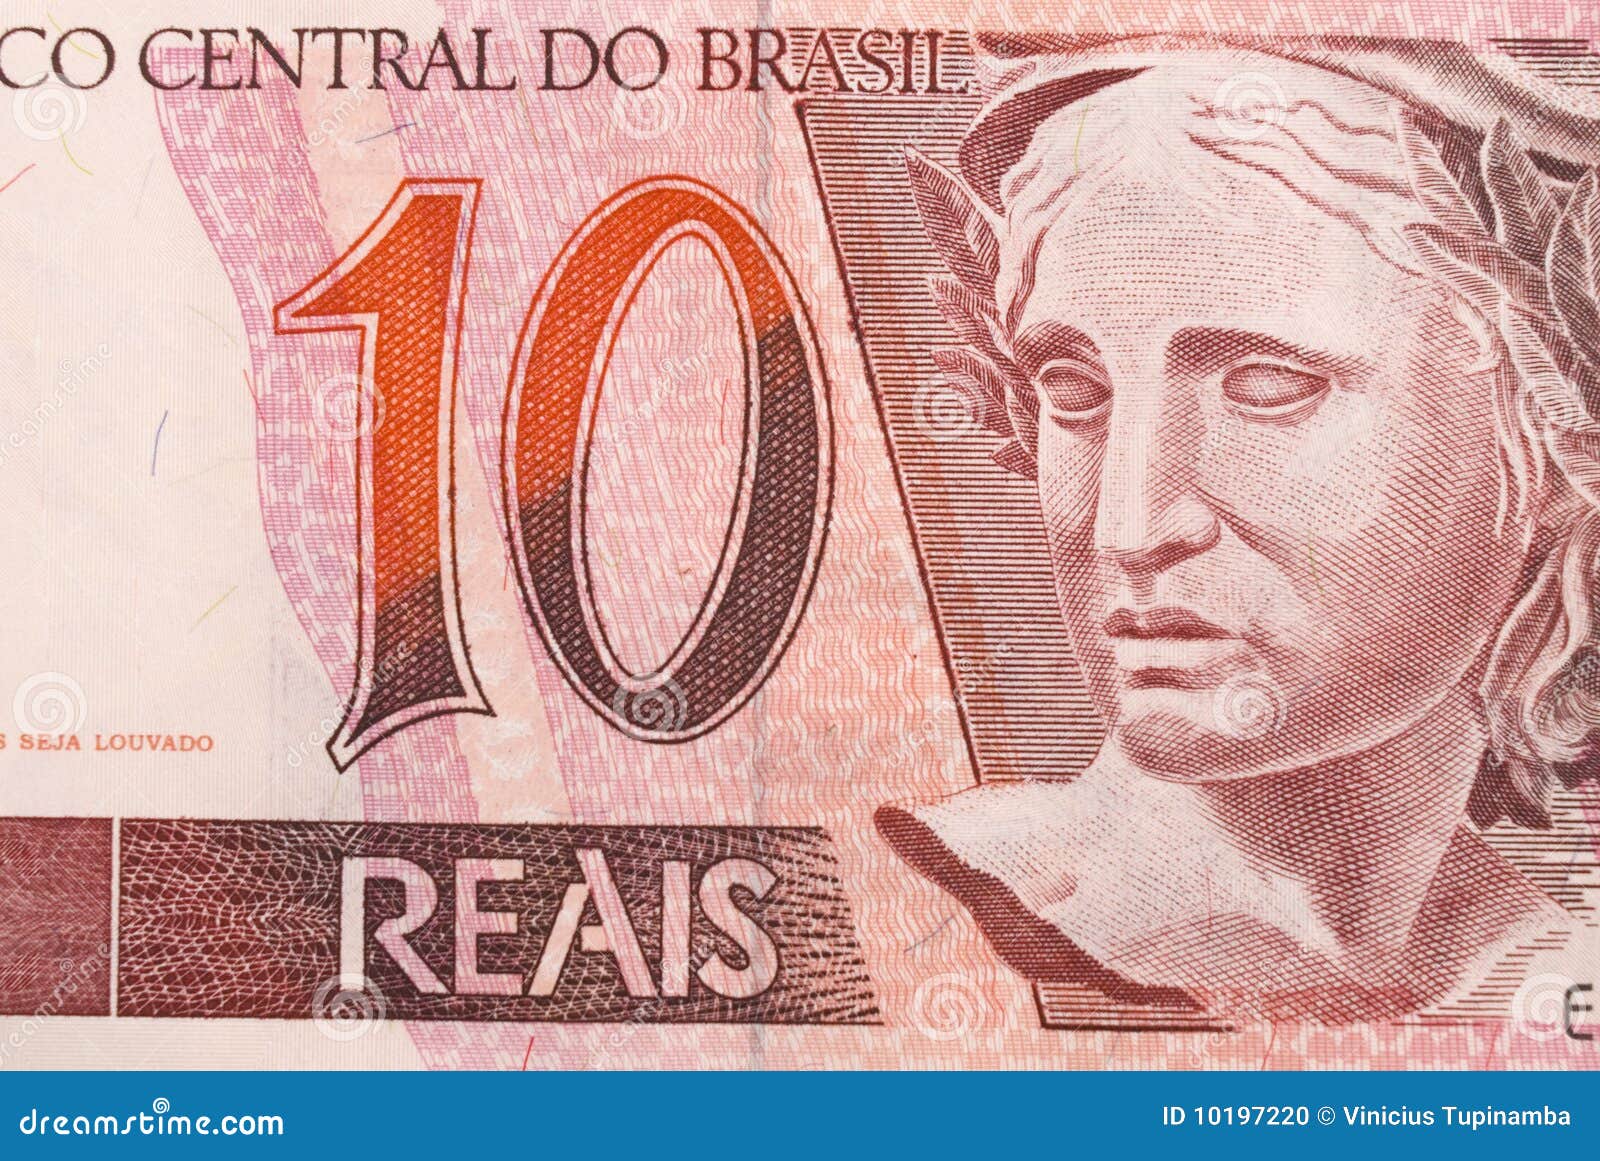 巴西1932年200元纪念币_货币外国币_钱币专柜【7788收藏__收藏热线】